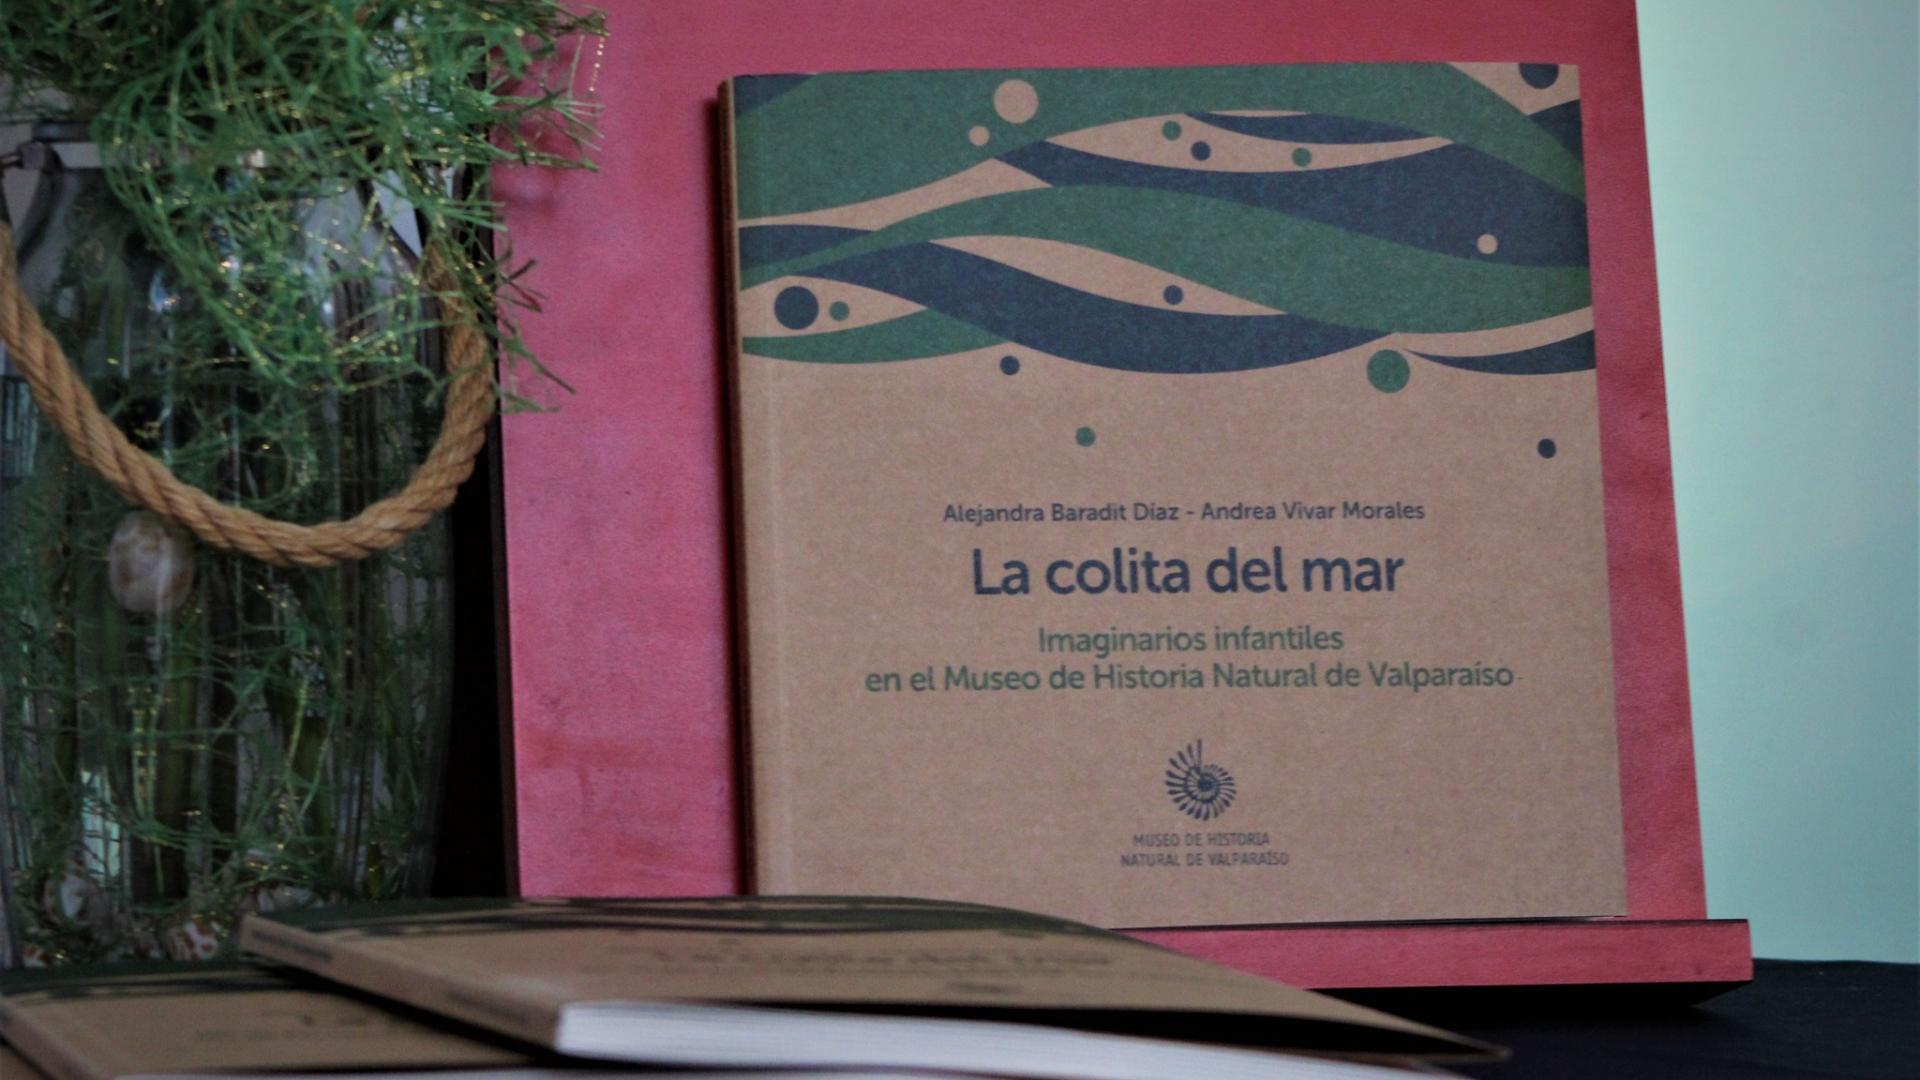 El libro, "La colita del mar, imaginarios infantiles en el Museo de Historia Natural de Valparaíso", fue presentado por parte del equipo del MHNV en el Seminario "Museo Arte e Infancia"